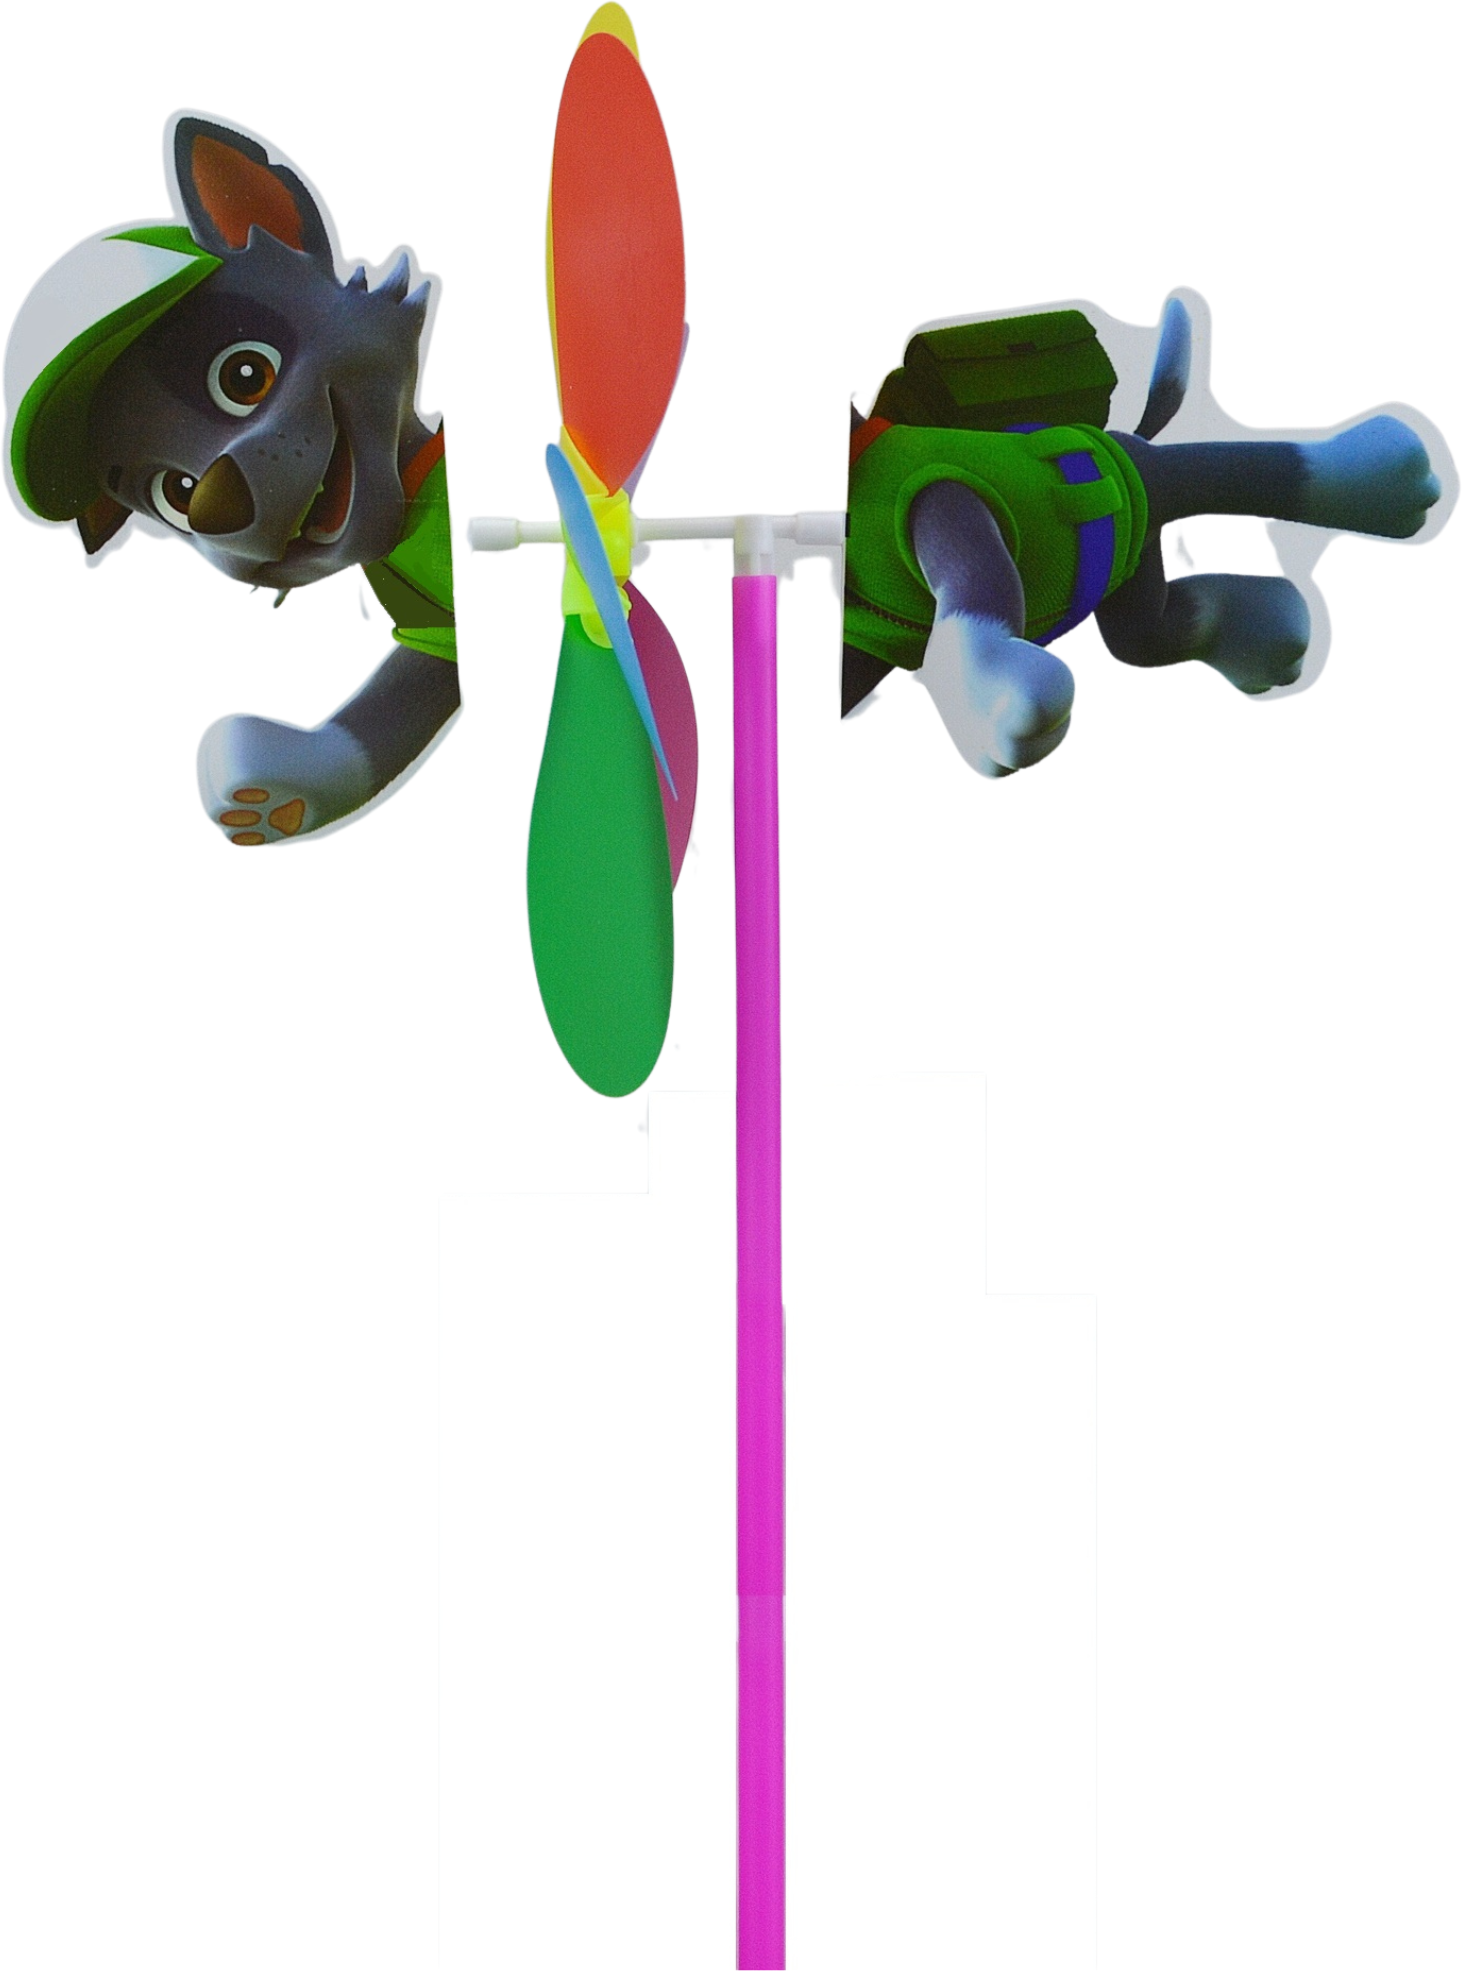 Ветерок цветочек, ветряная мельница, игрушка - вертушка для детей с фигуркой животного собачка, диаметр 23.5 см.